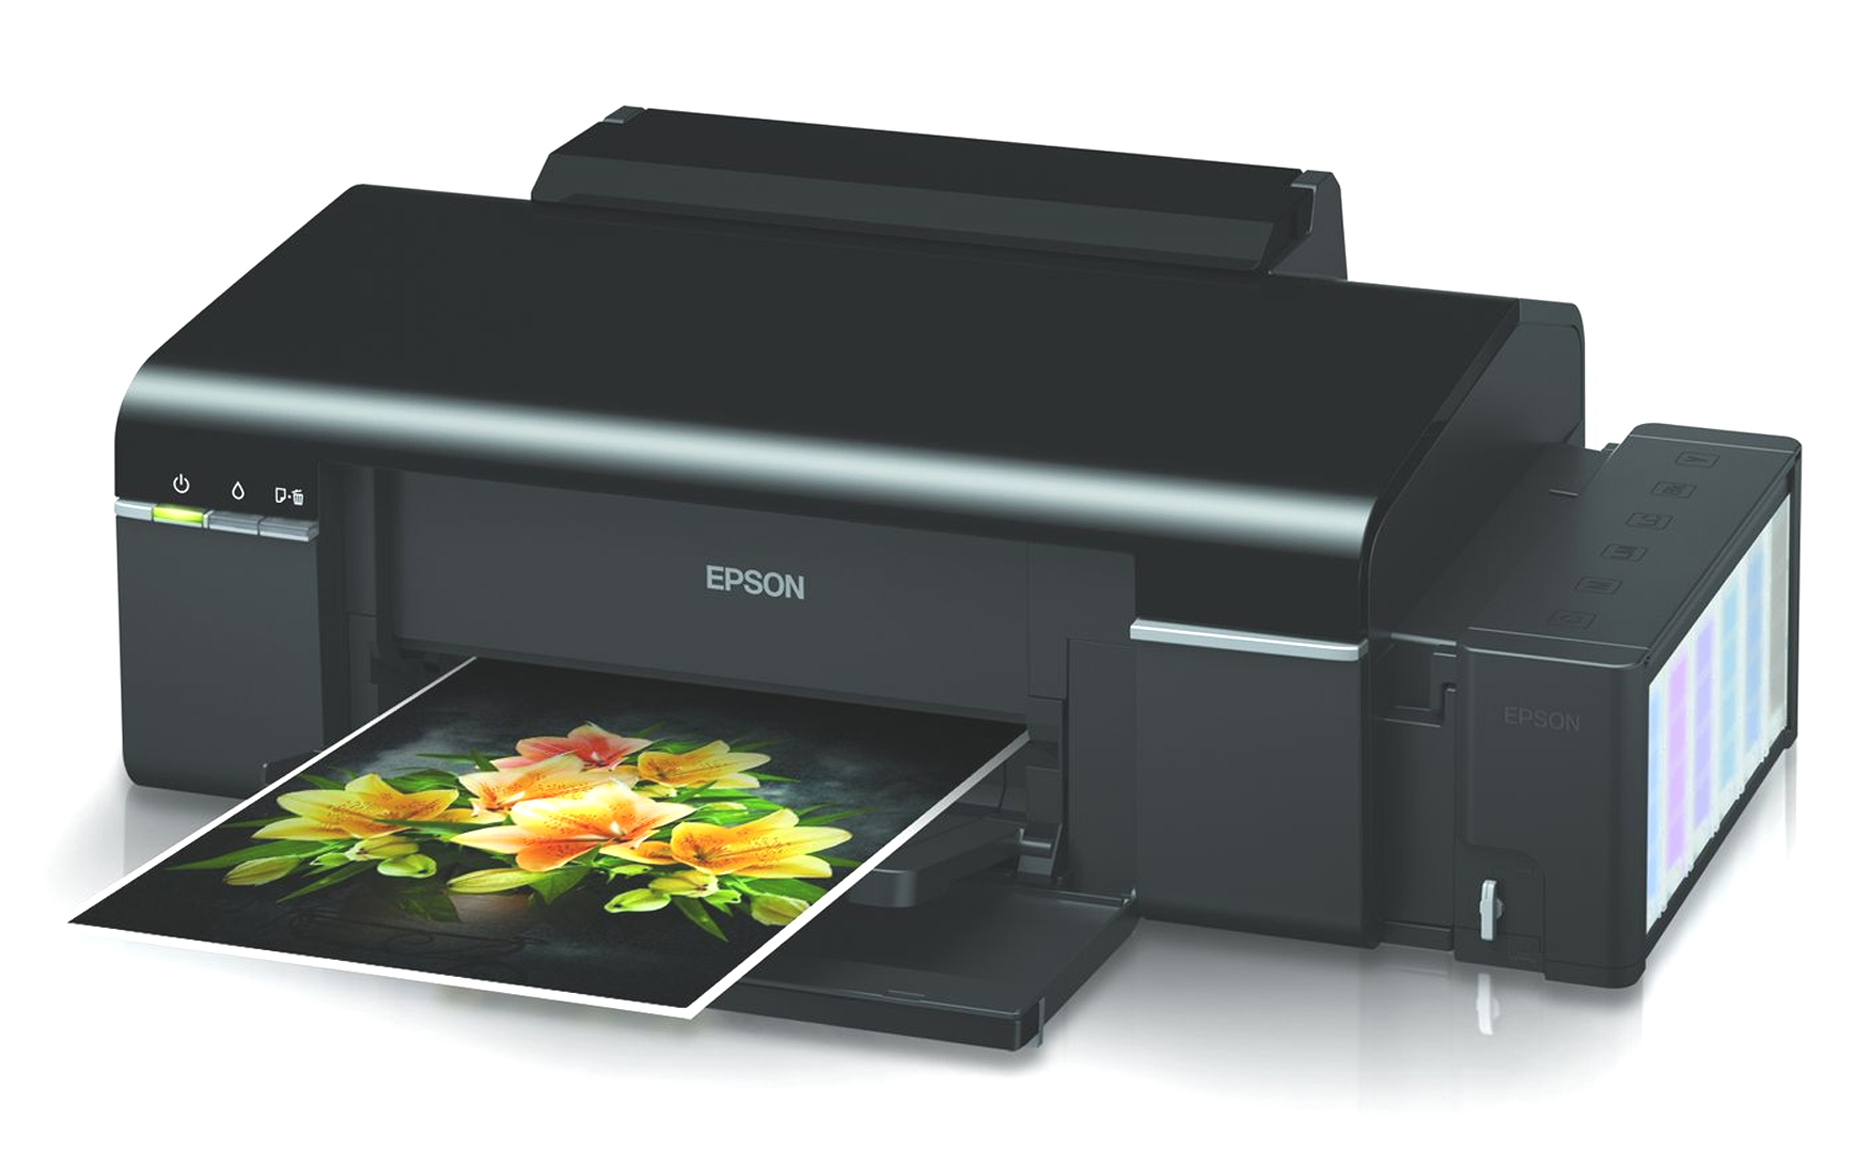 Harga Printer Epson L800 2019 Terbaru 1386